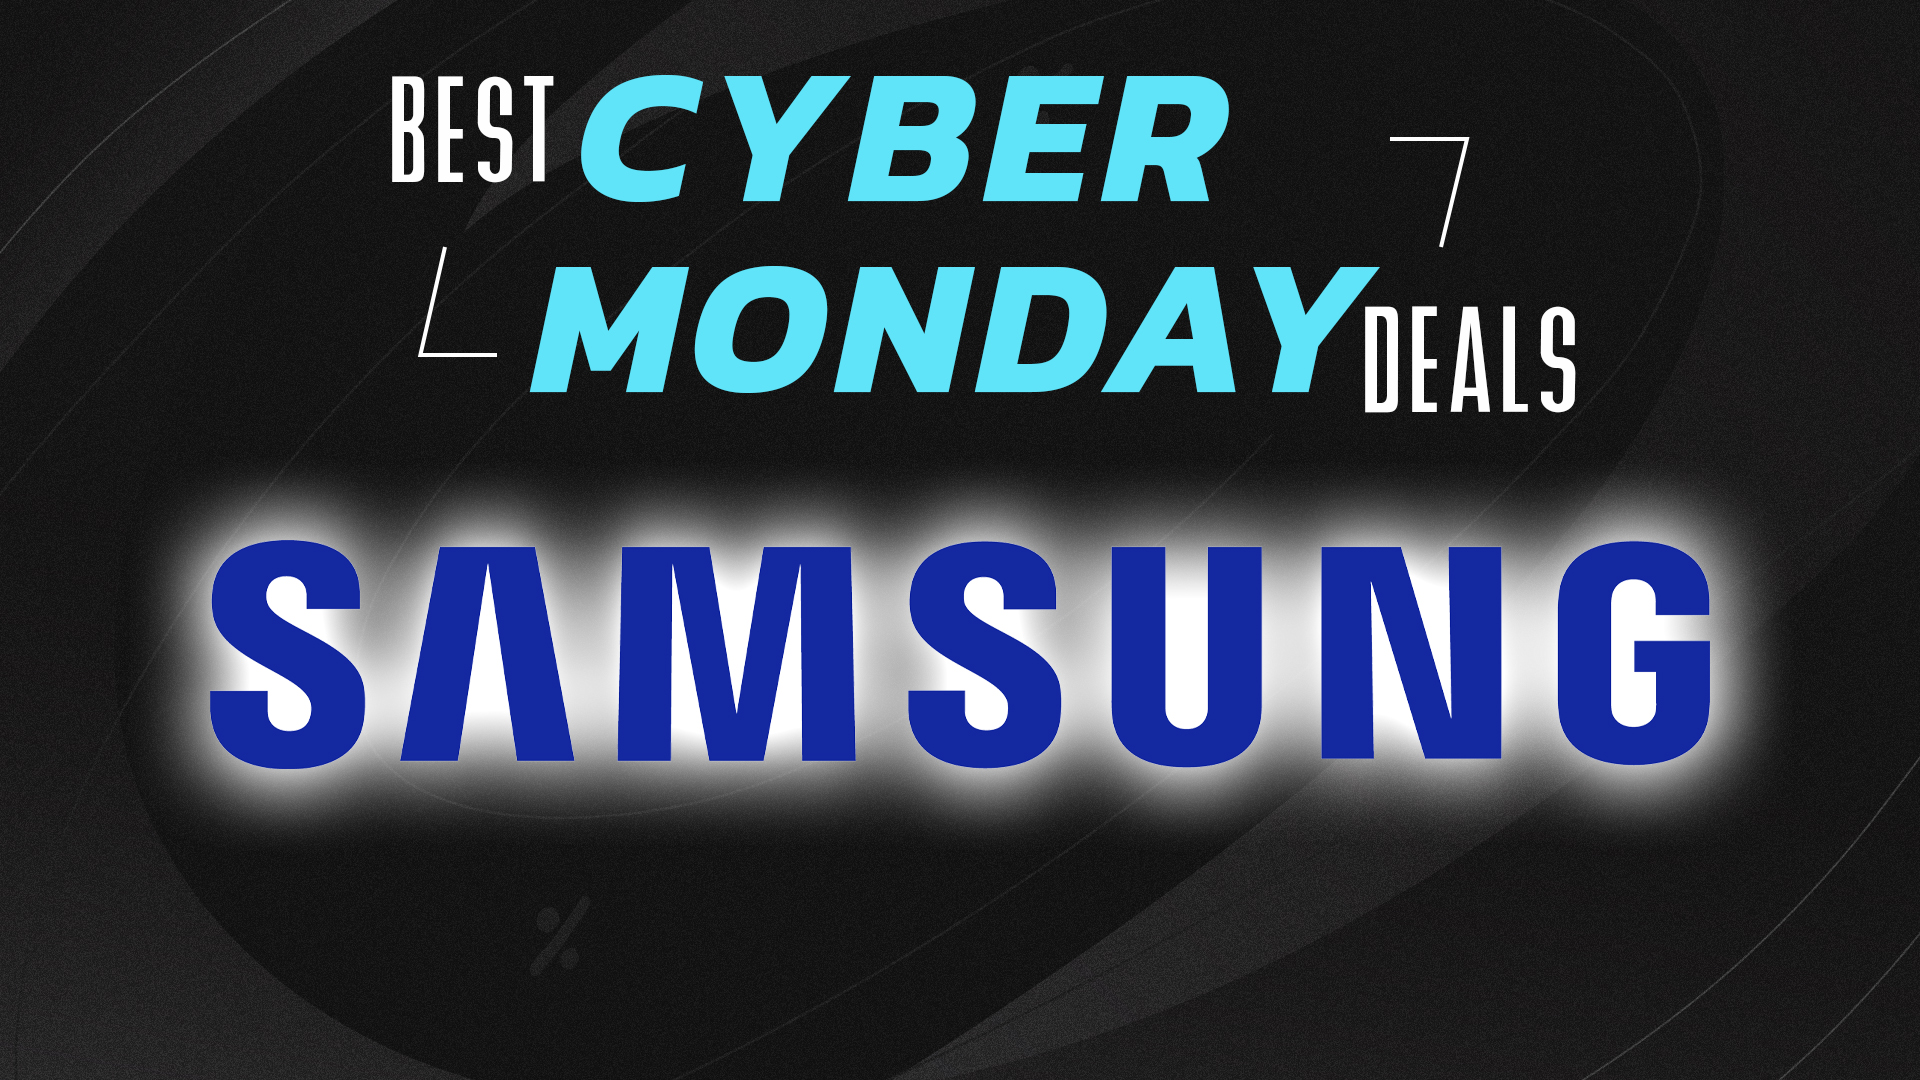 Save $500 on this wild 32-inch 4K/240Hz Samsung Odyssey Neo G8 monitor